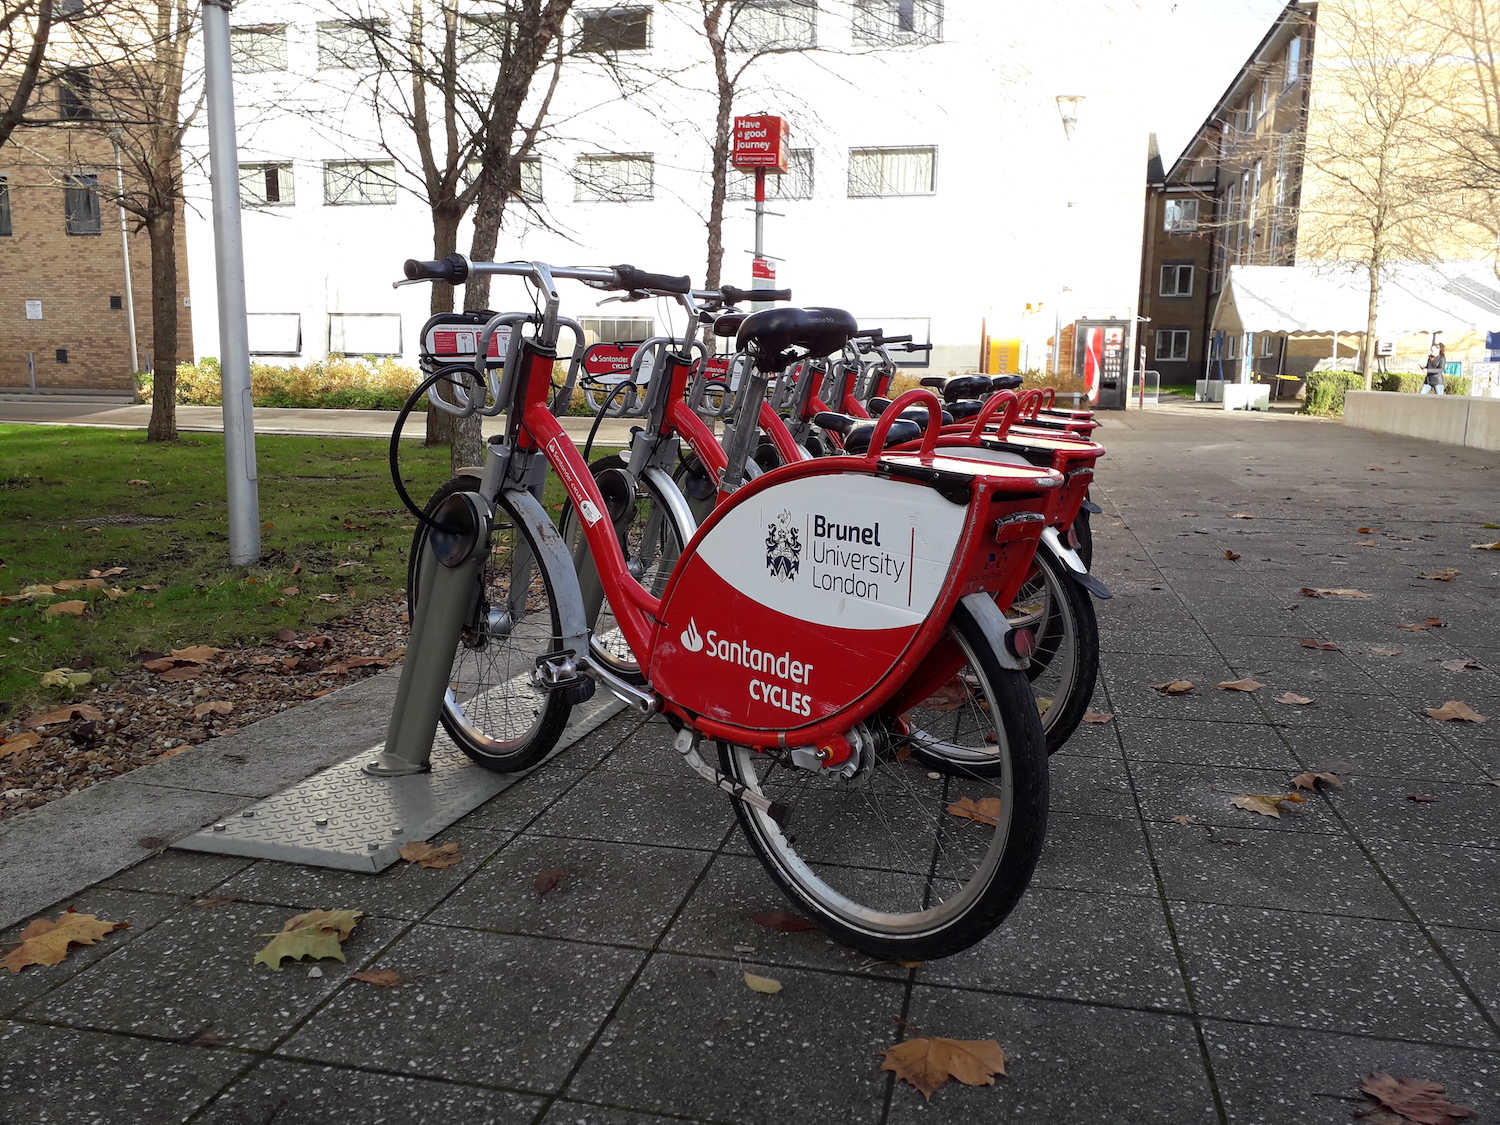 image-5-red-santander-cycles-brunel-on-campus-bike-rack-rental-station